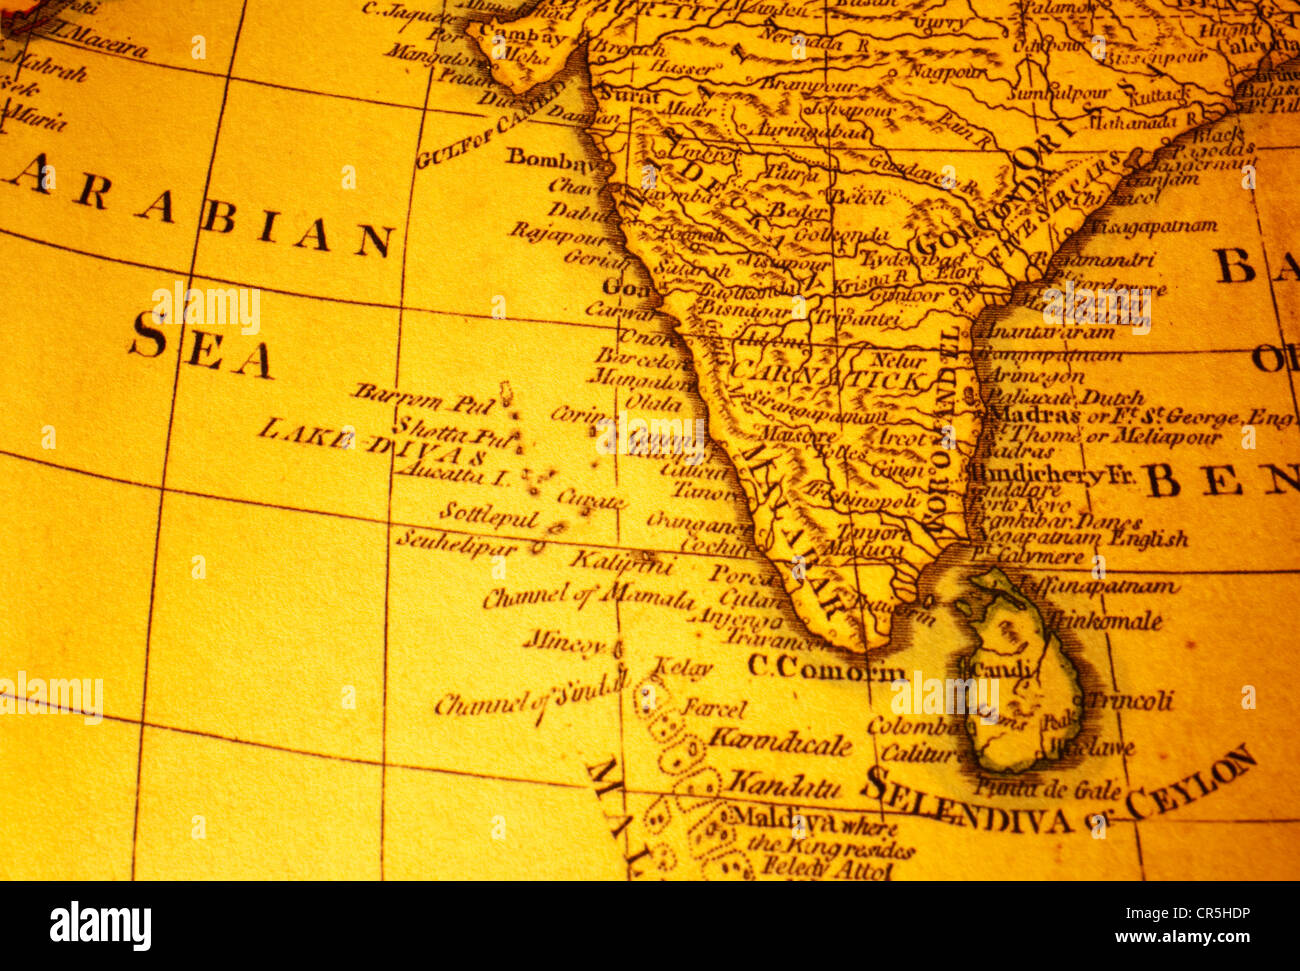 Mappa vecchia di India e Sri Lanka o Ceylon e Mare Arabico. Mappa è dal 1799 ed è al di fuori del diritto d'autore. Foto Stock